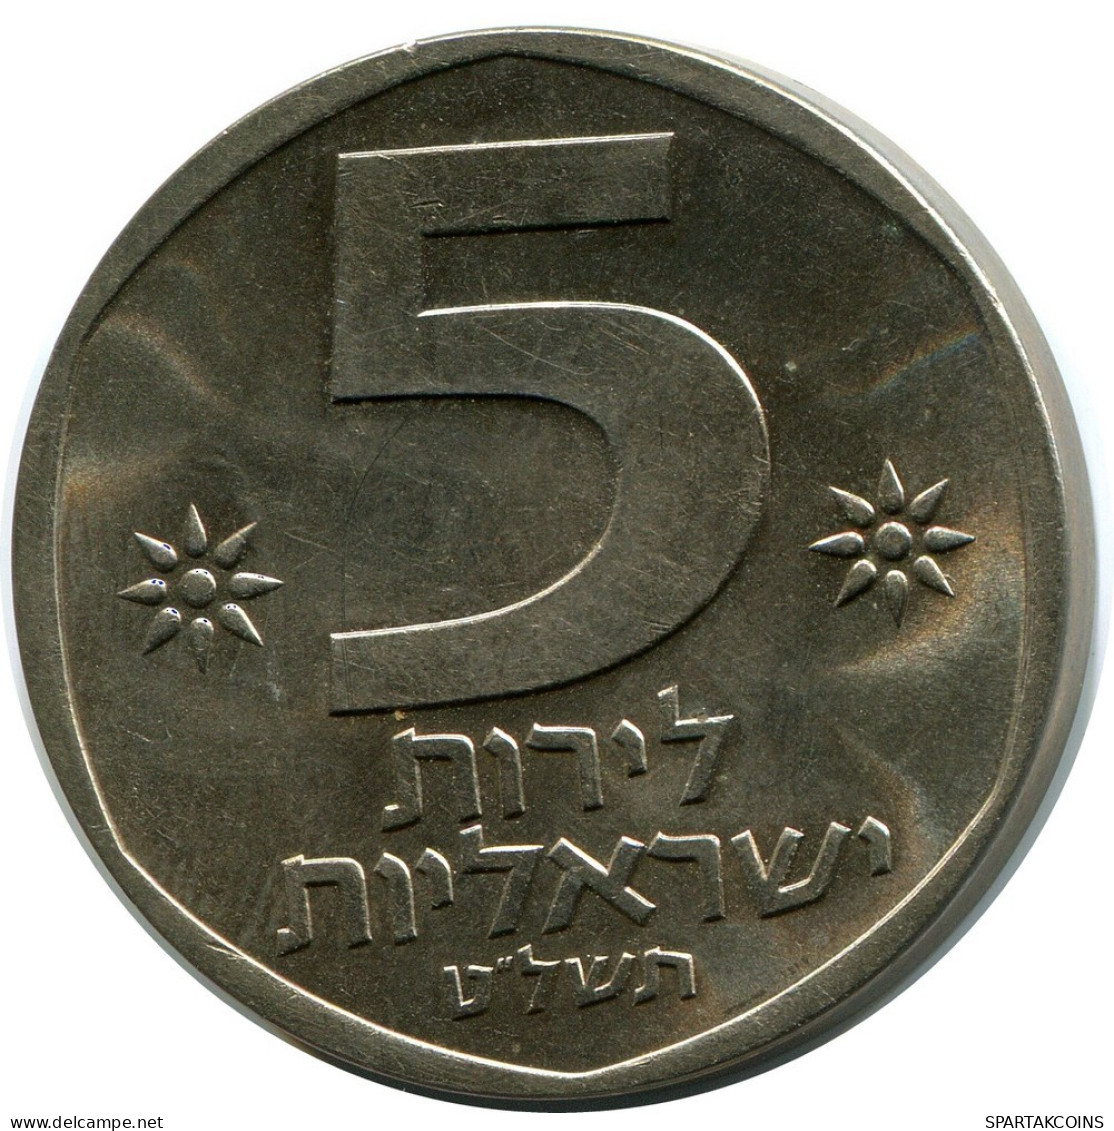 5 LIROT 1979 ISRAEL Pièce #AZ281.F.A - Israel